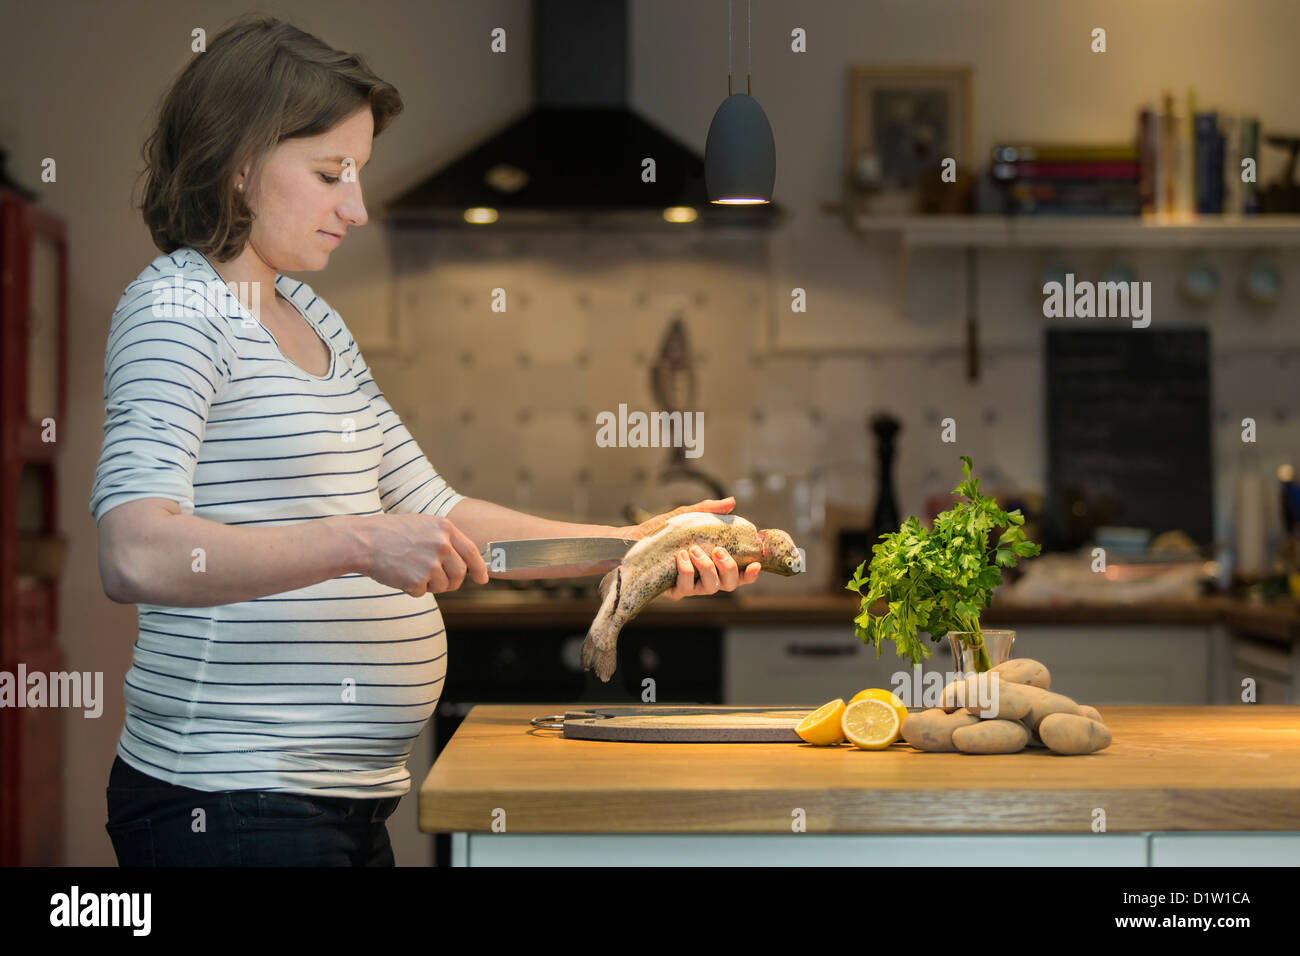 La mujer embarazada, de 35 años, cocinar la trucha fresca en una cocina. Foto de stock